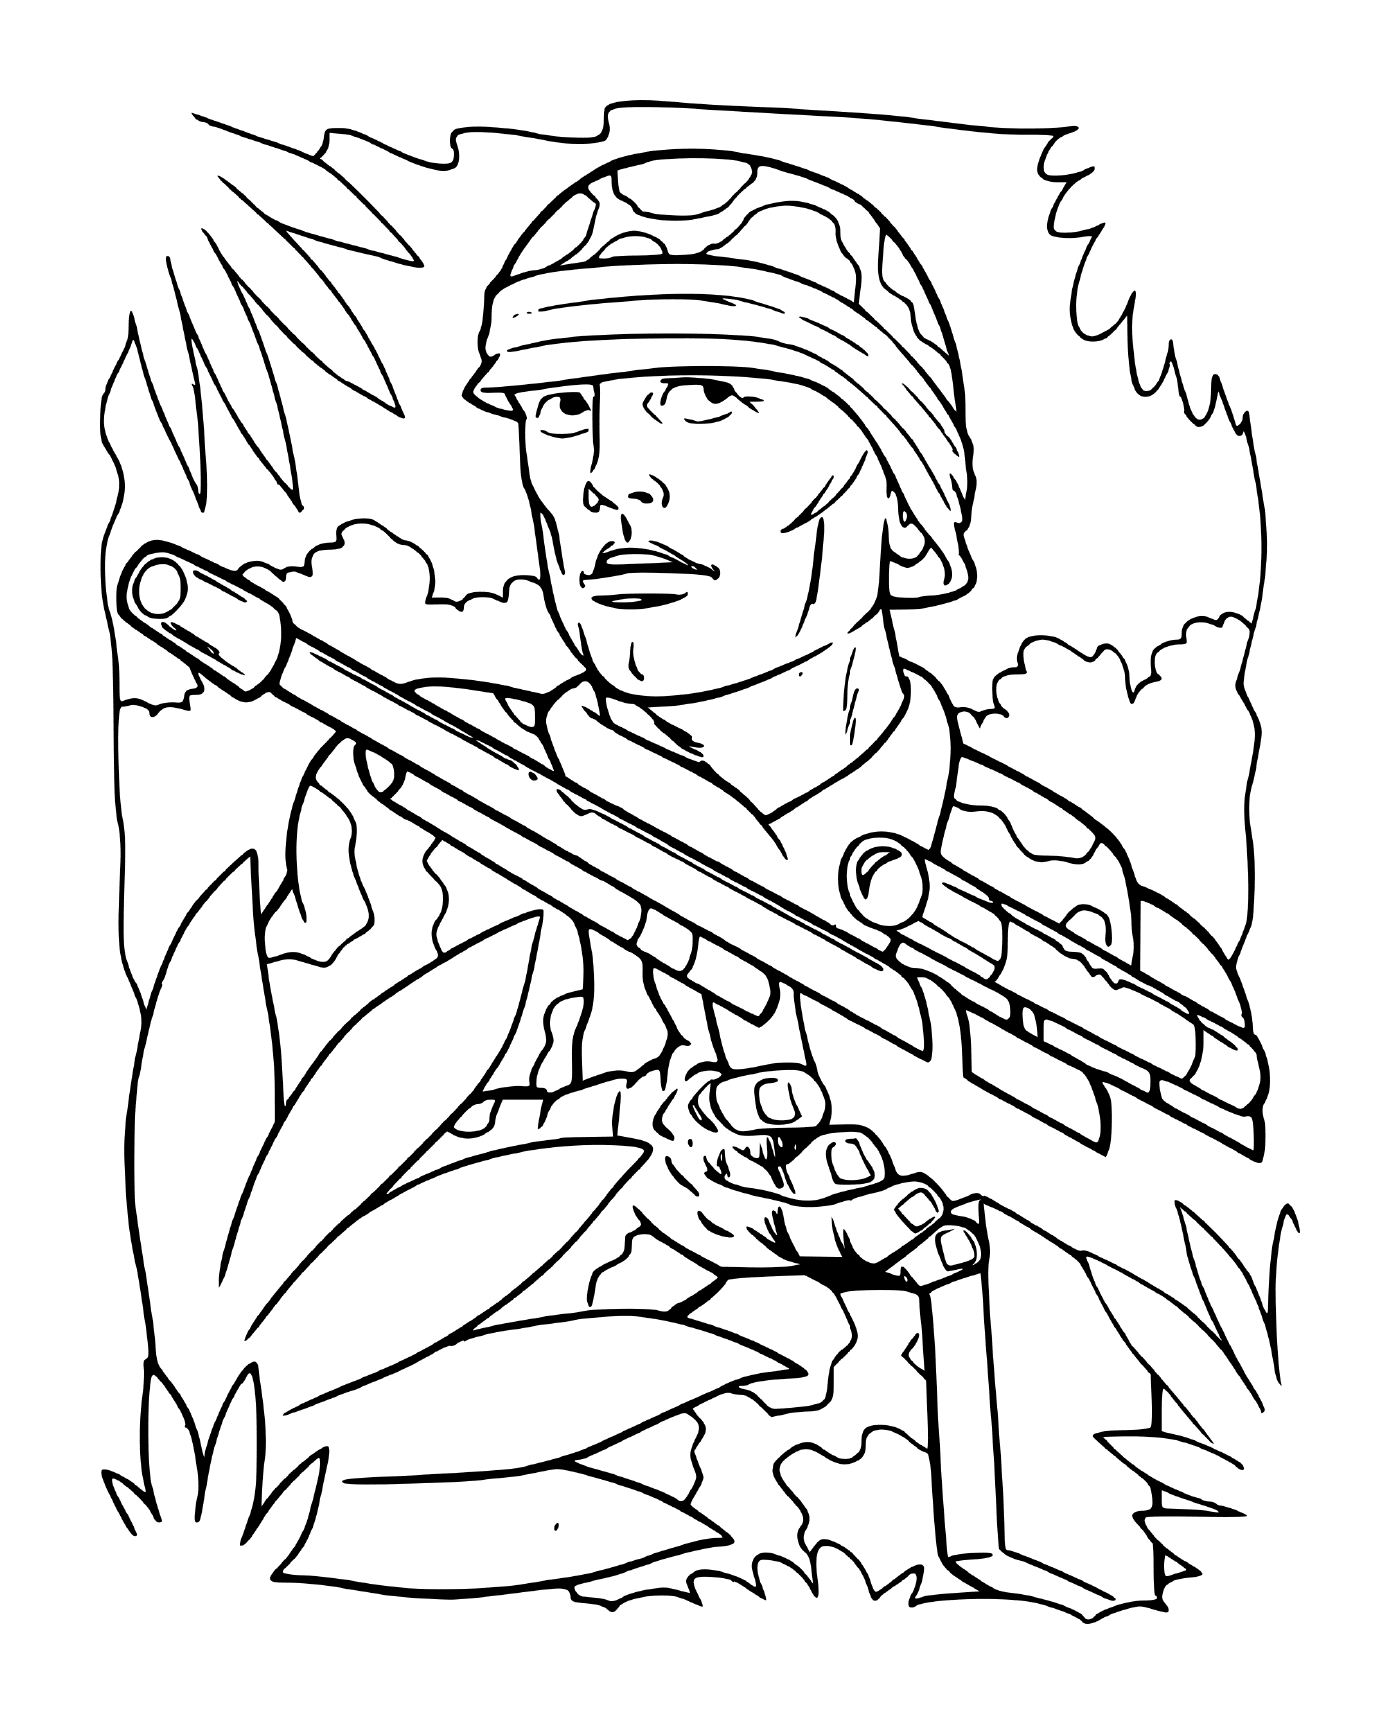  Soldado de guerra na floresta: um soldado segurando um rifle em uma floresta 